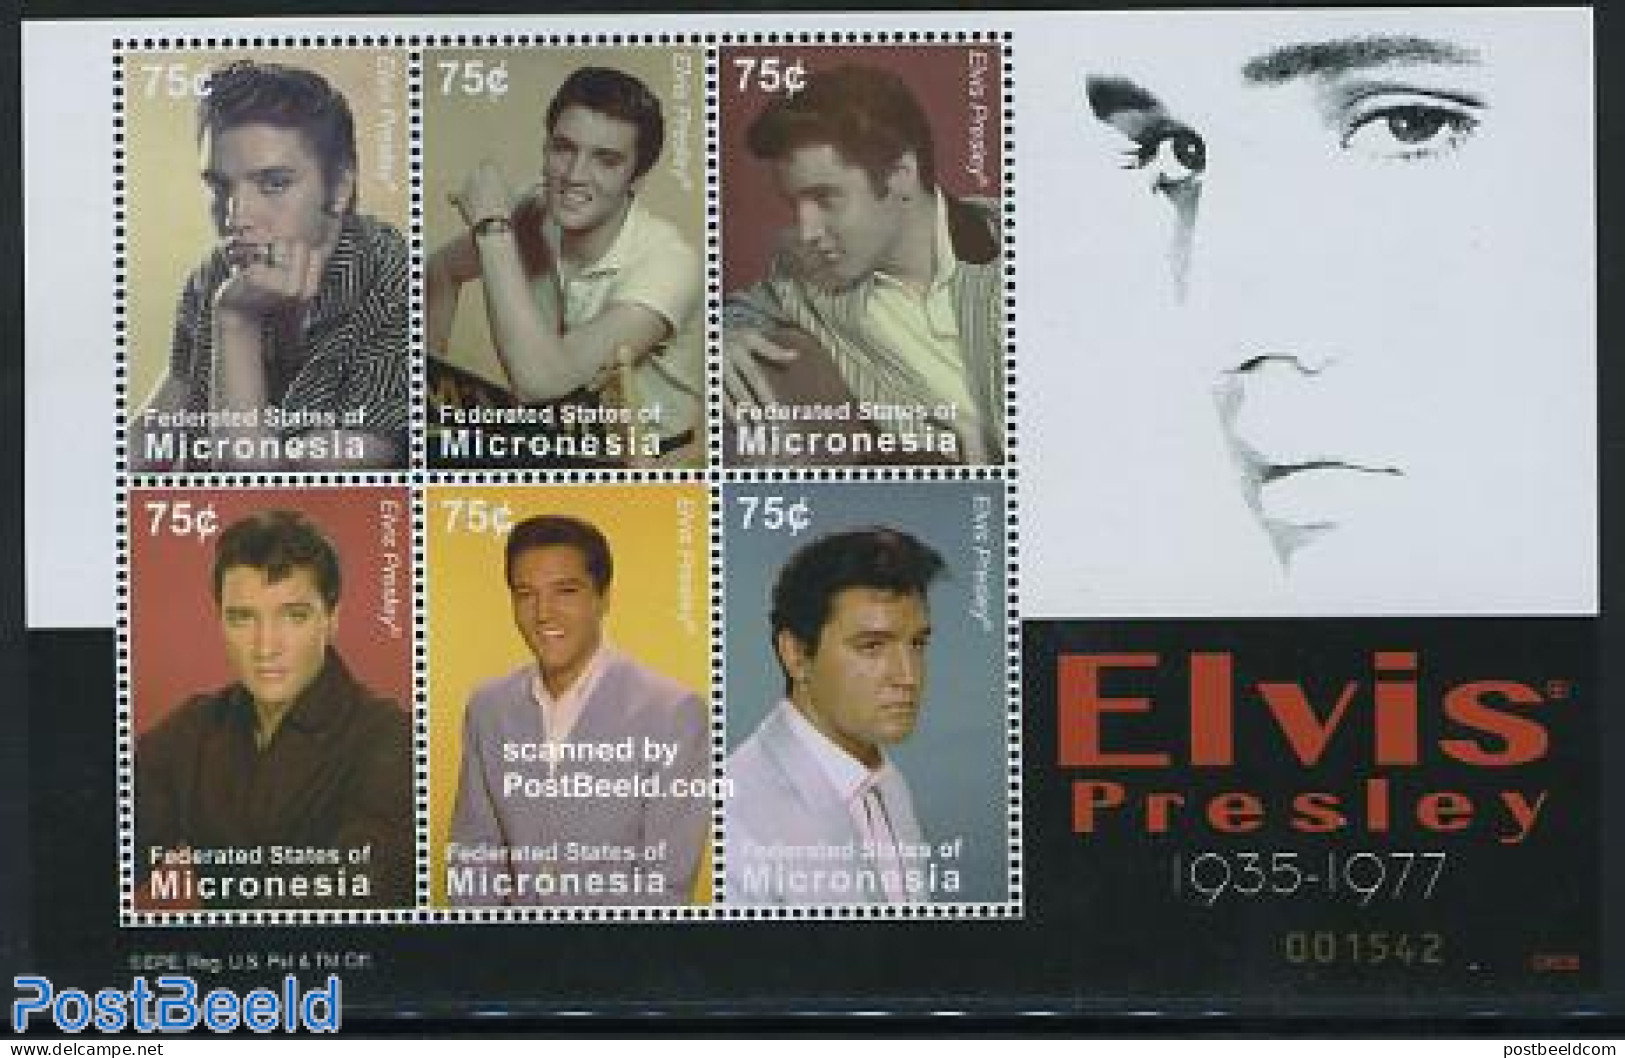 Micronesia 2008 Elvis Presley 6v M/s, Mint NH, Performance Art - Elvis Presley - Music - Popular Music - Elvis Presley